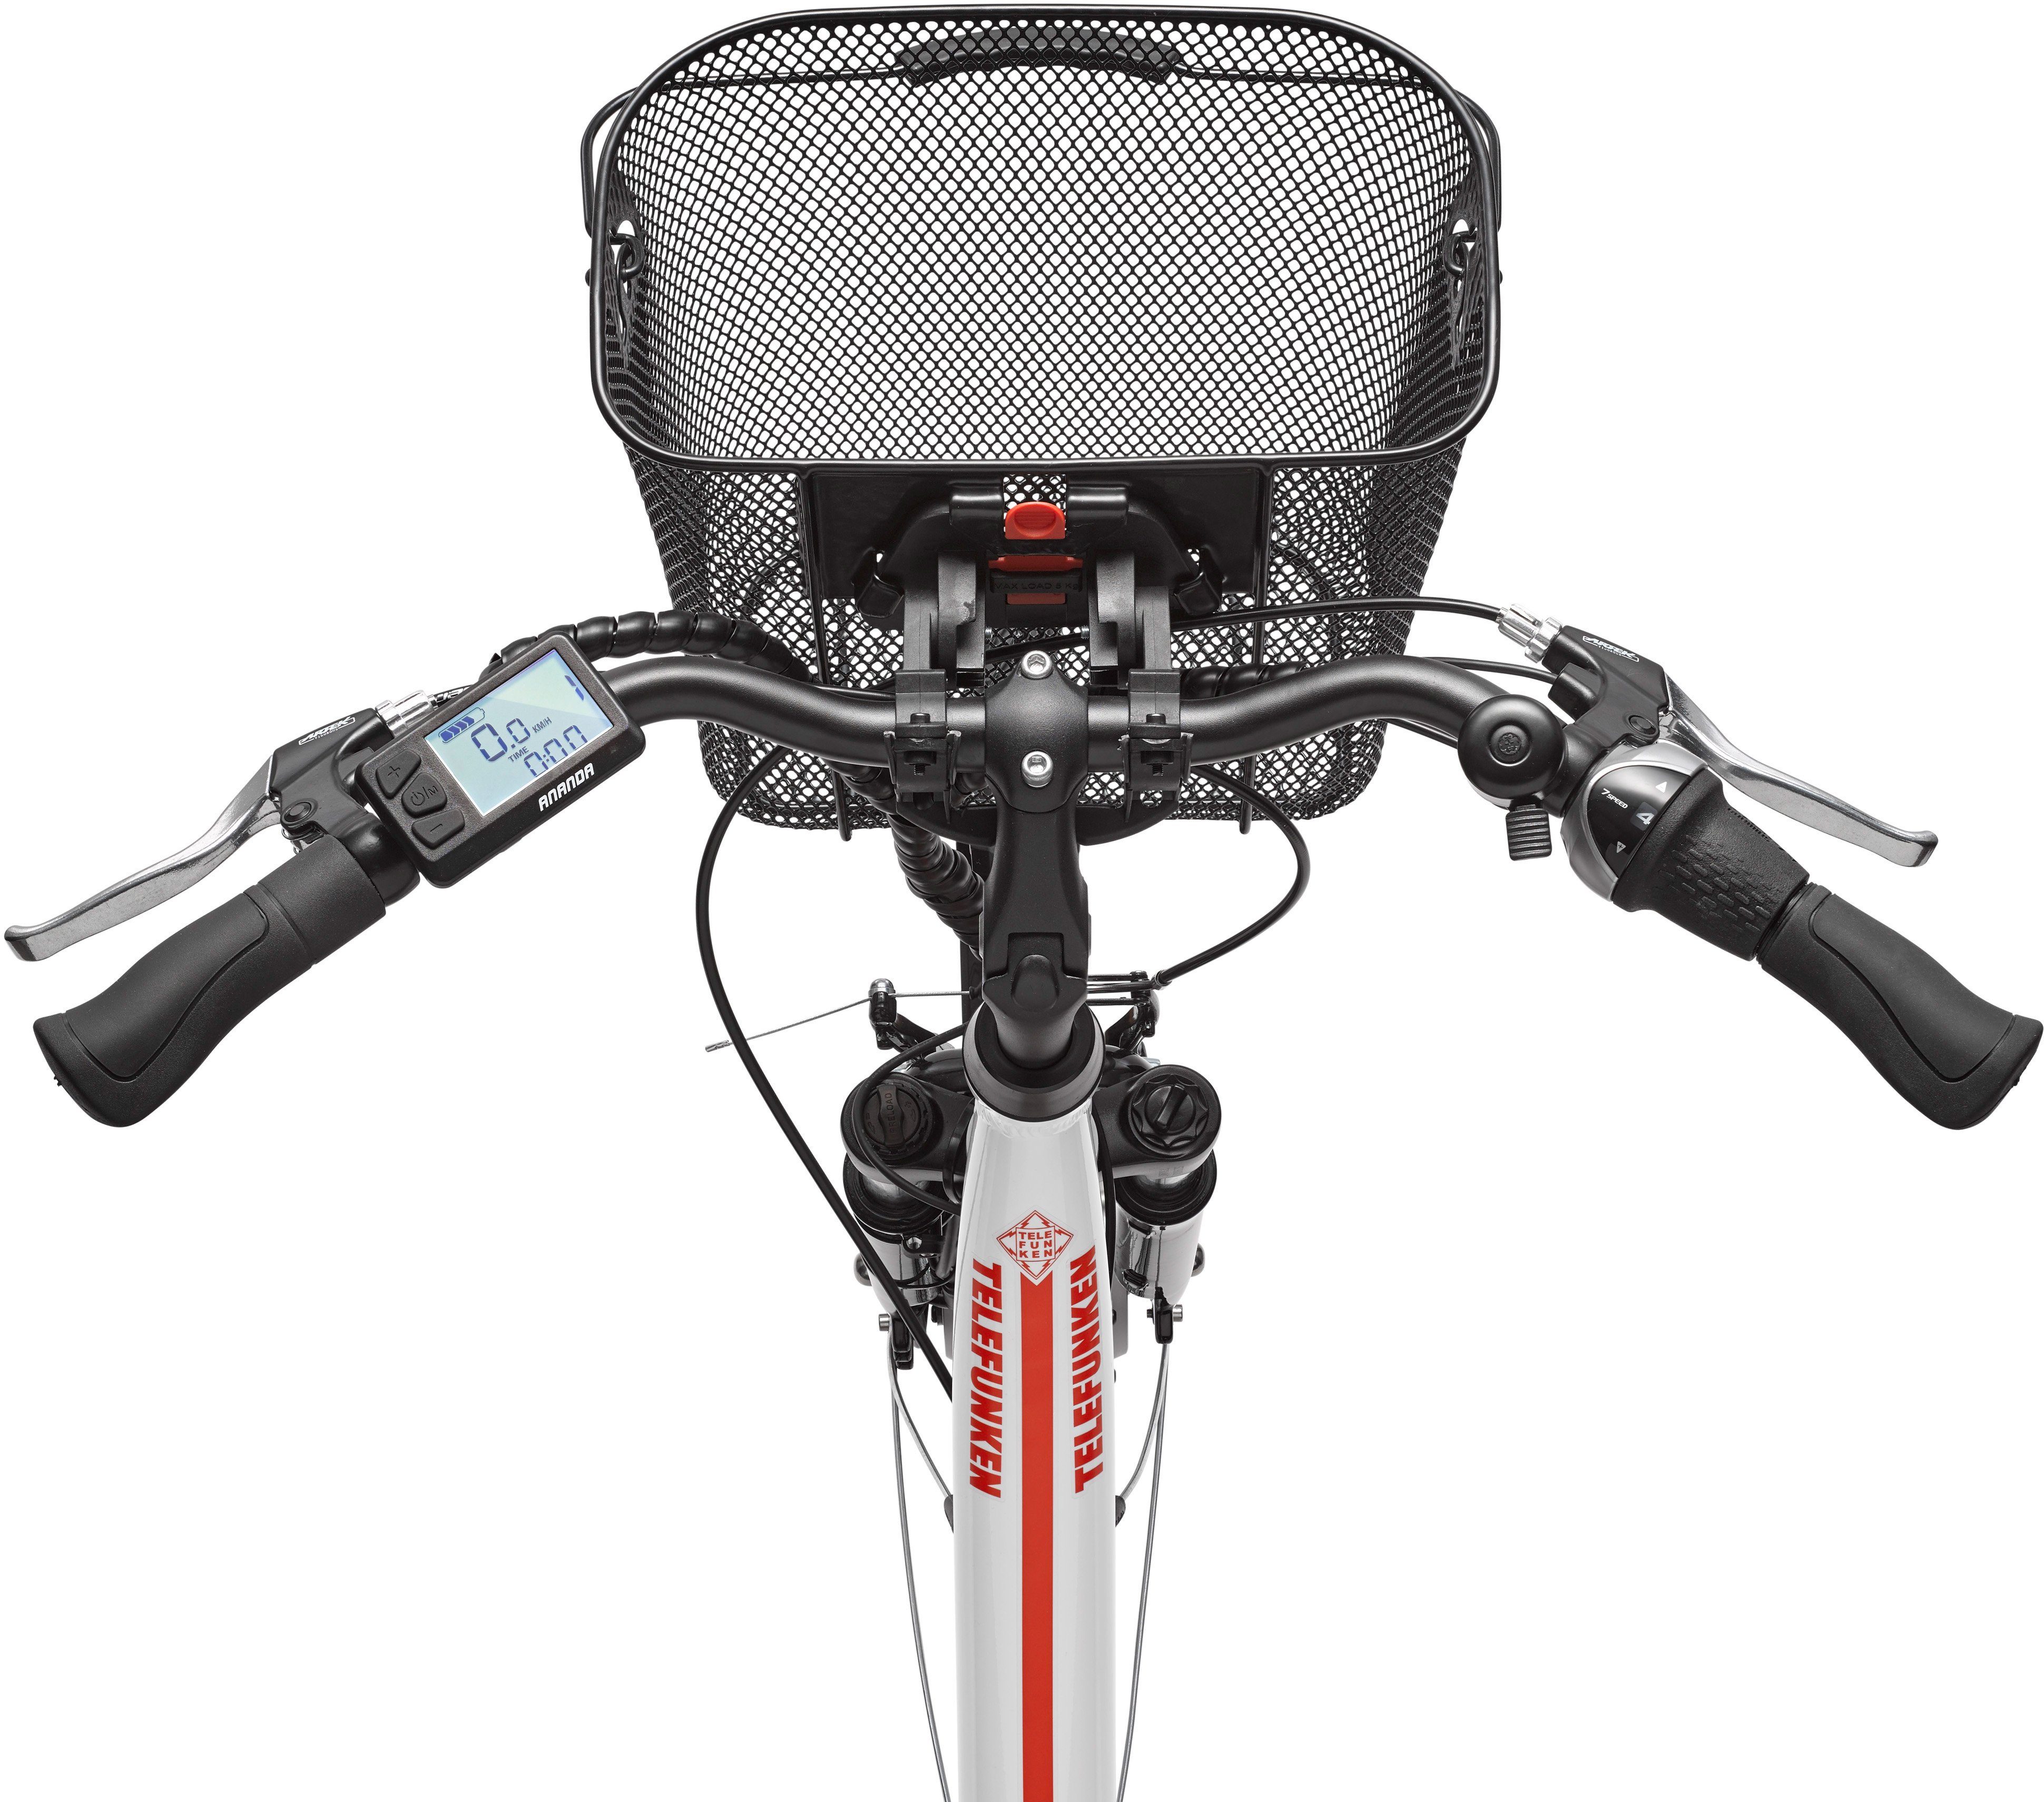 Telefunken E-Bike RC657 Multitalent, 7 Gang Shimano Nexus Schaltwerk,  Nabenschaltung, Frontmotor, 468 Wh Batterie